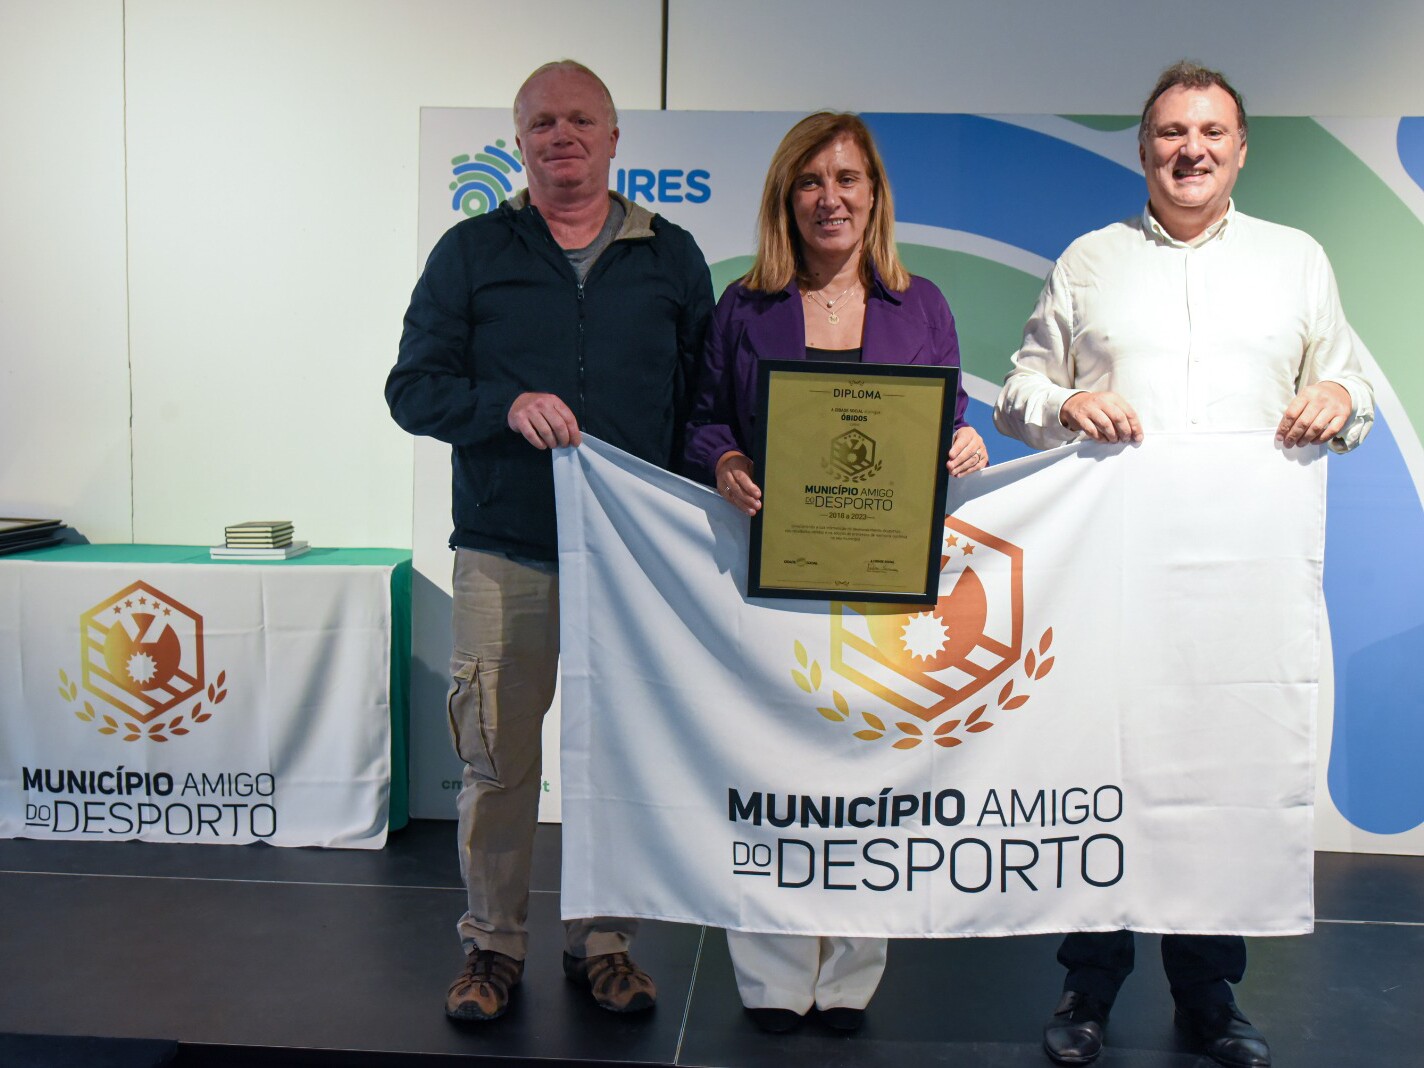 Óbidos recebe galardão "Município Amigo do Desporto" e "Autarquia Solidária"